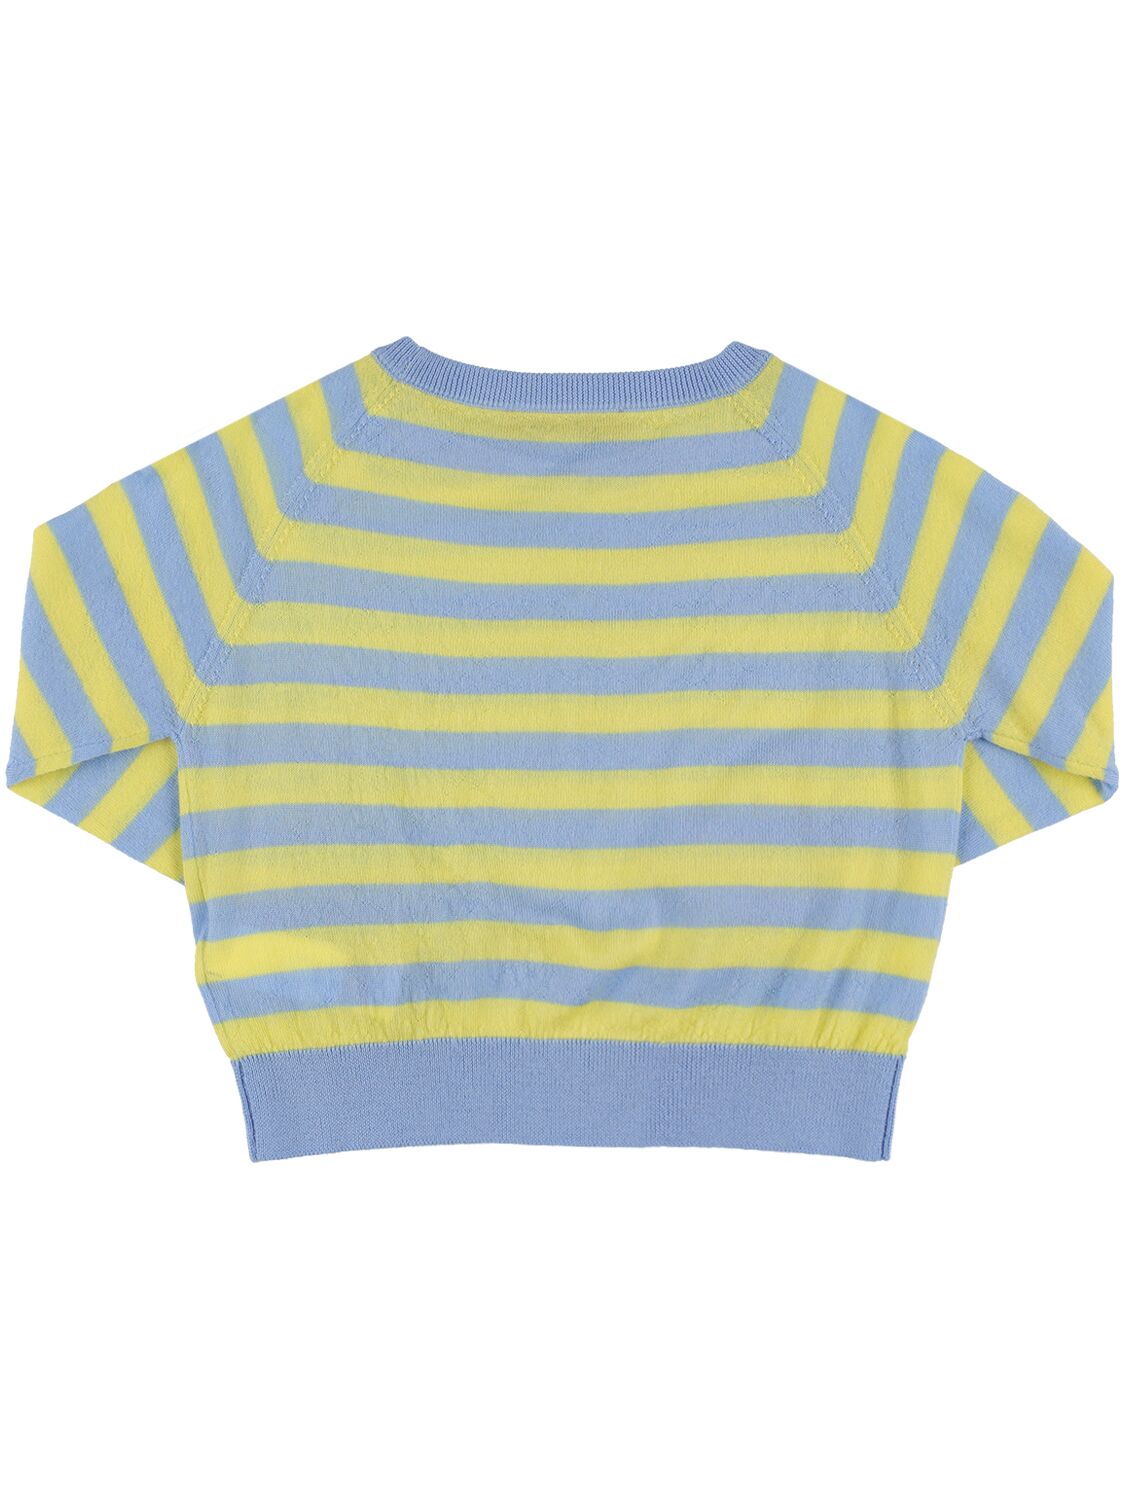 Shop Max & Co Wool Knit Sweater In Beige,blue